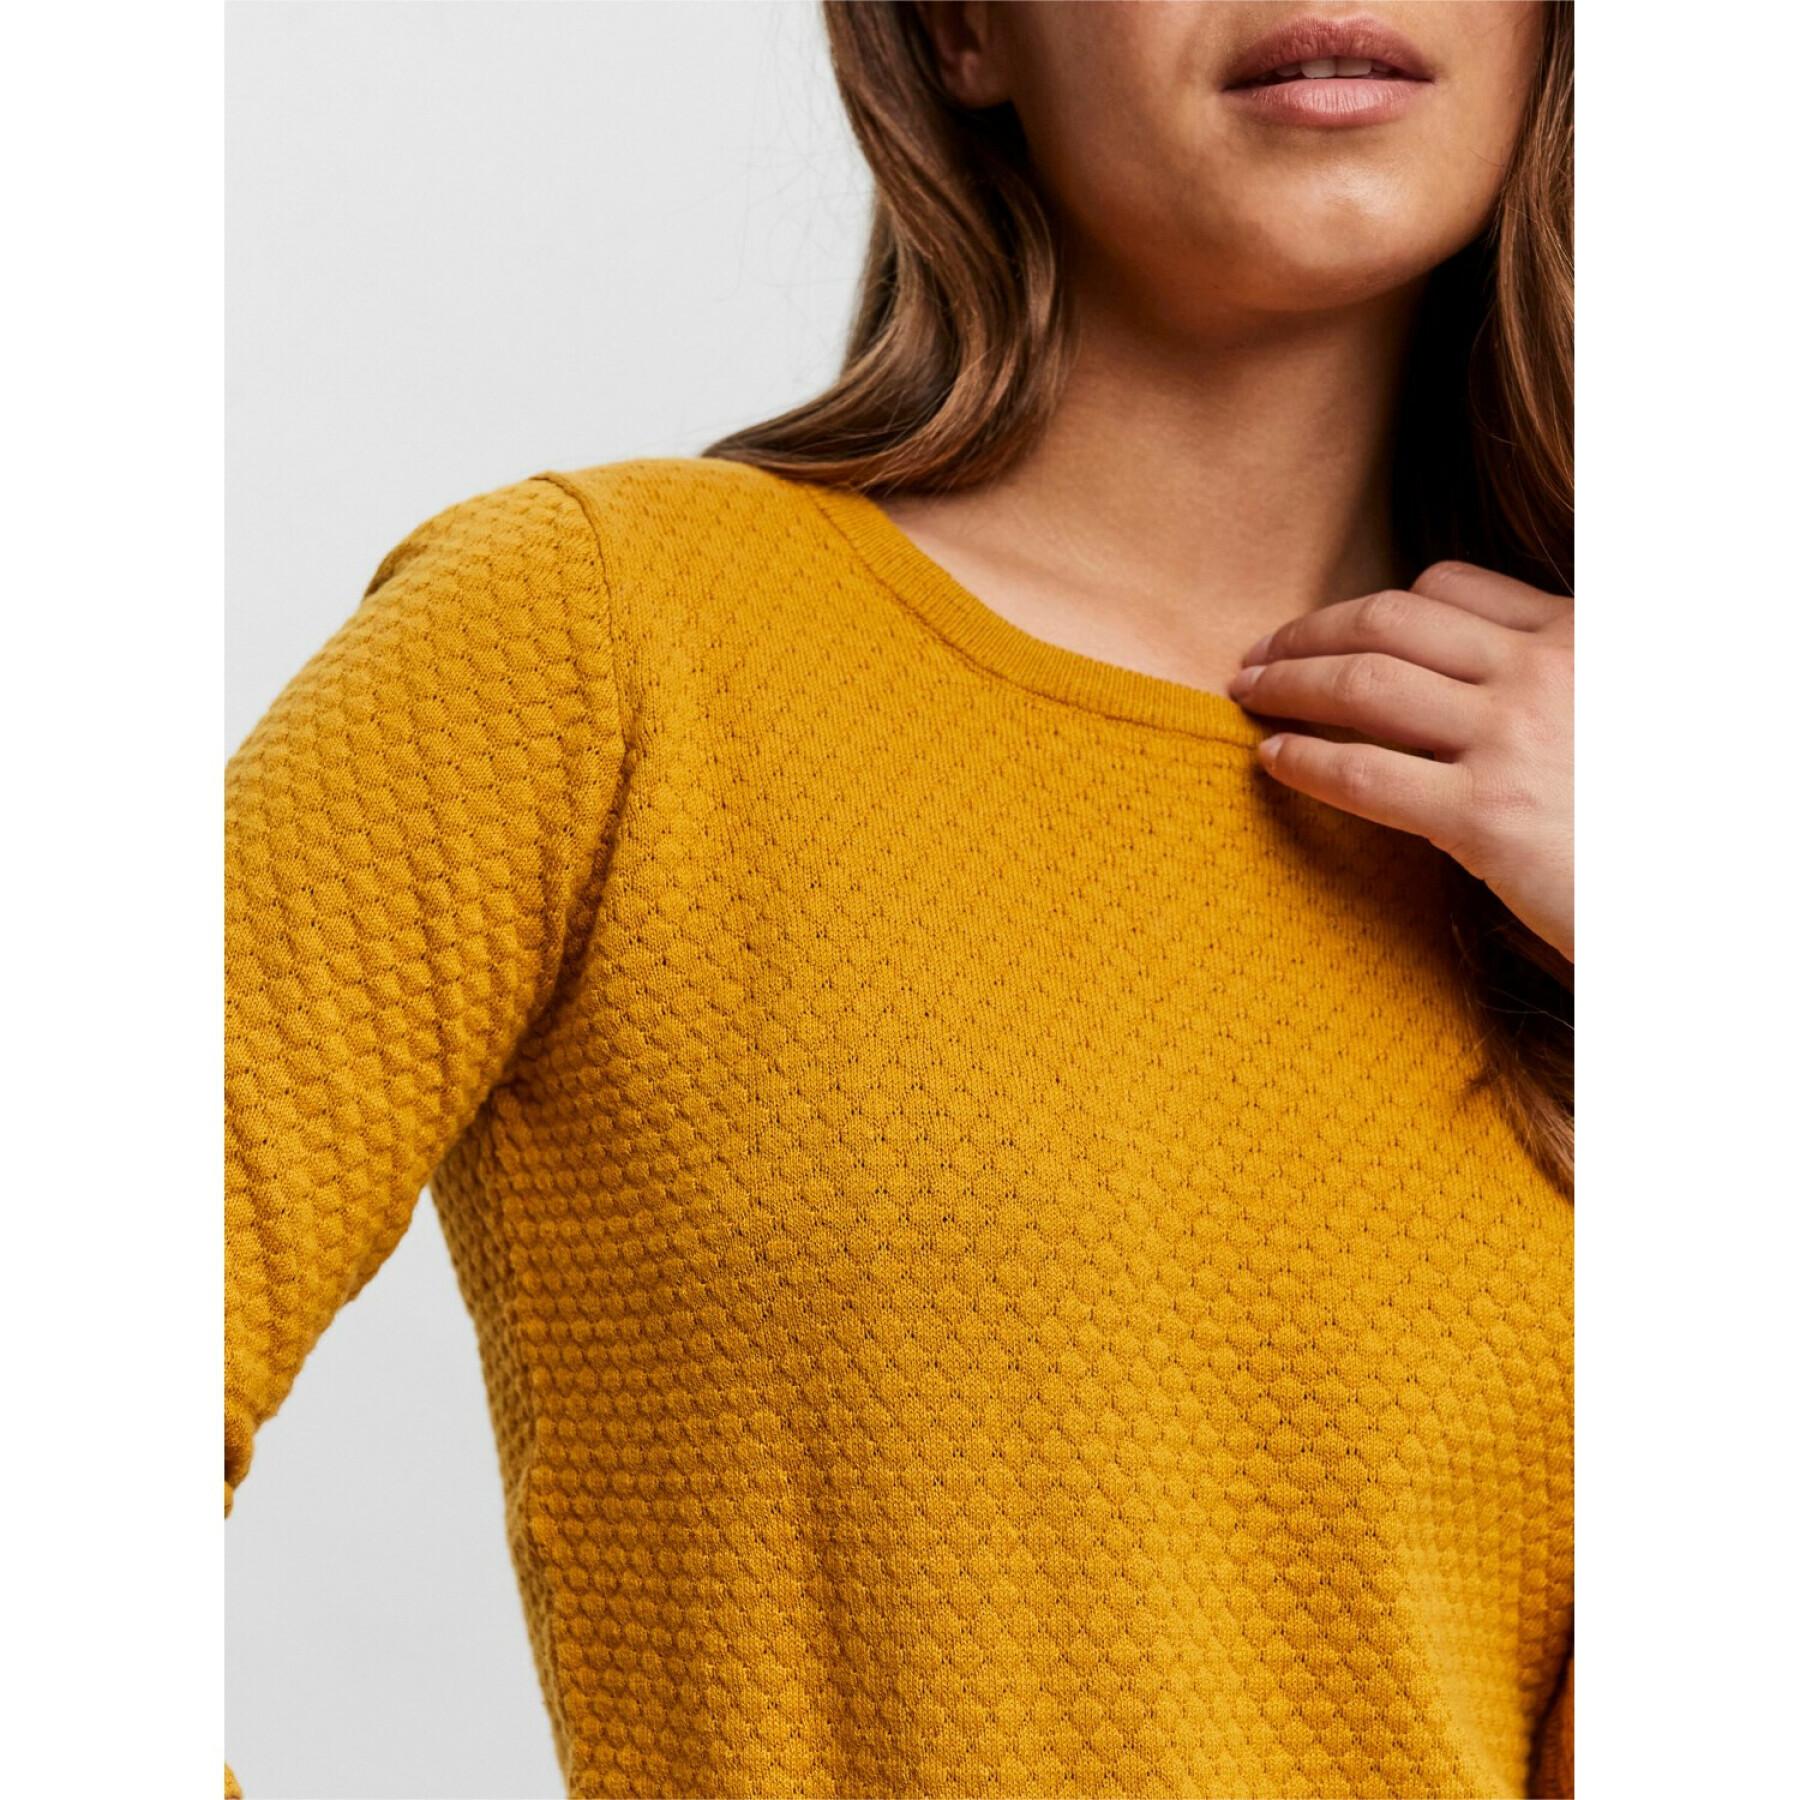 Women's O-neck sweater Vero Moda vmcare